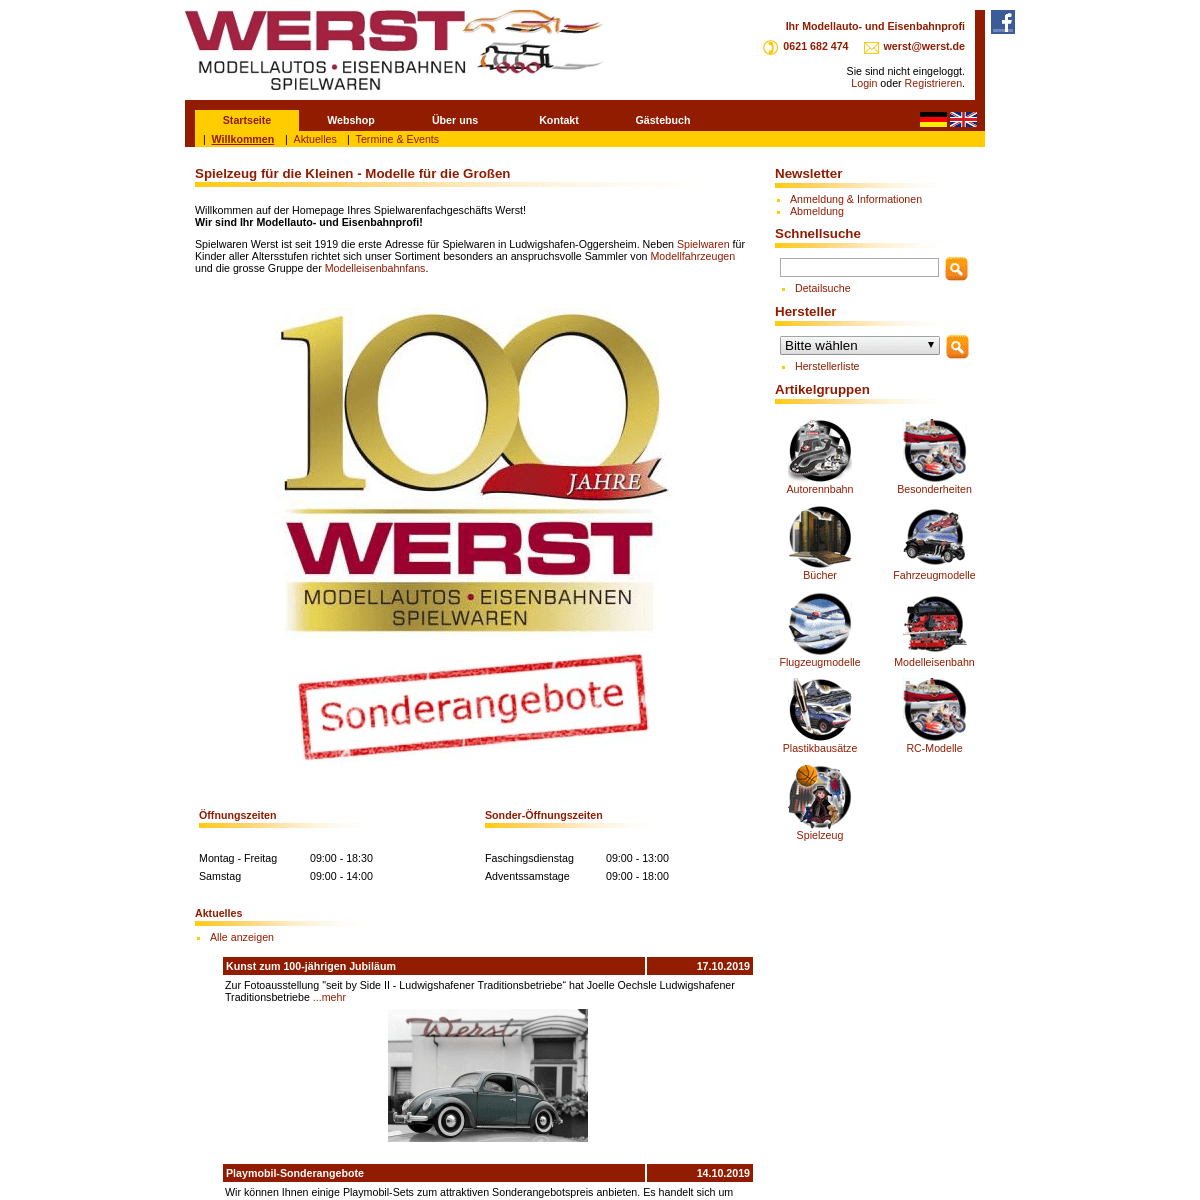 A complete backup of spielwaren-werst.de